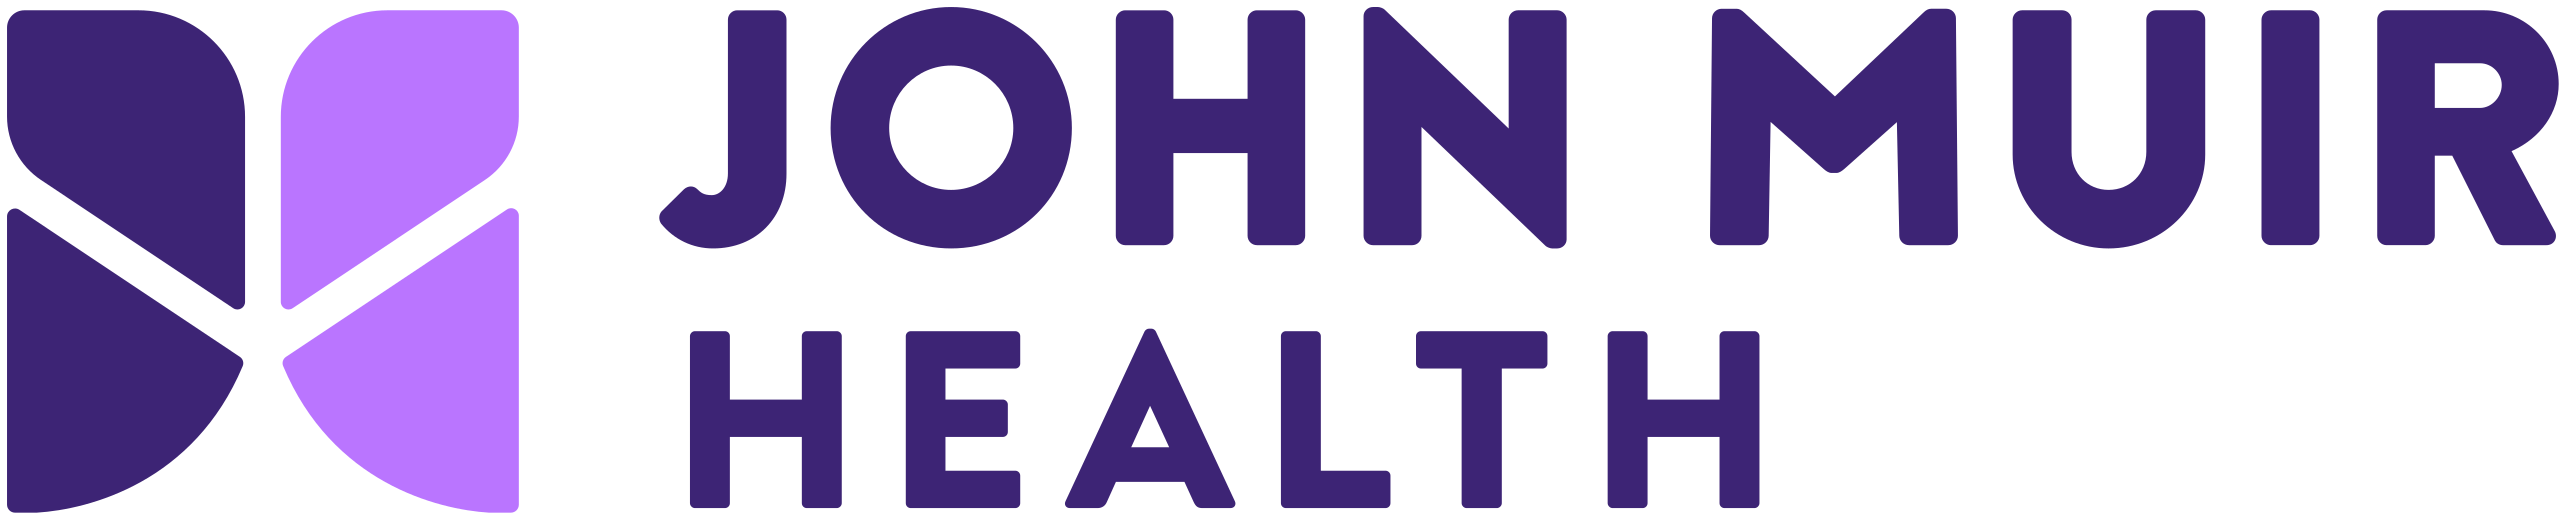 John_Muir_Health_logo.svg